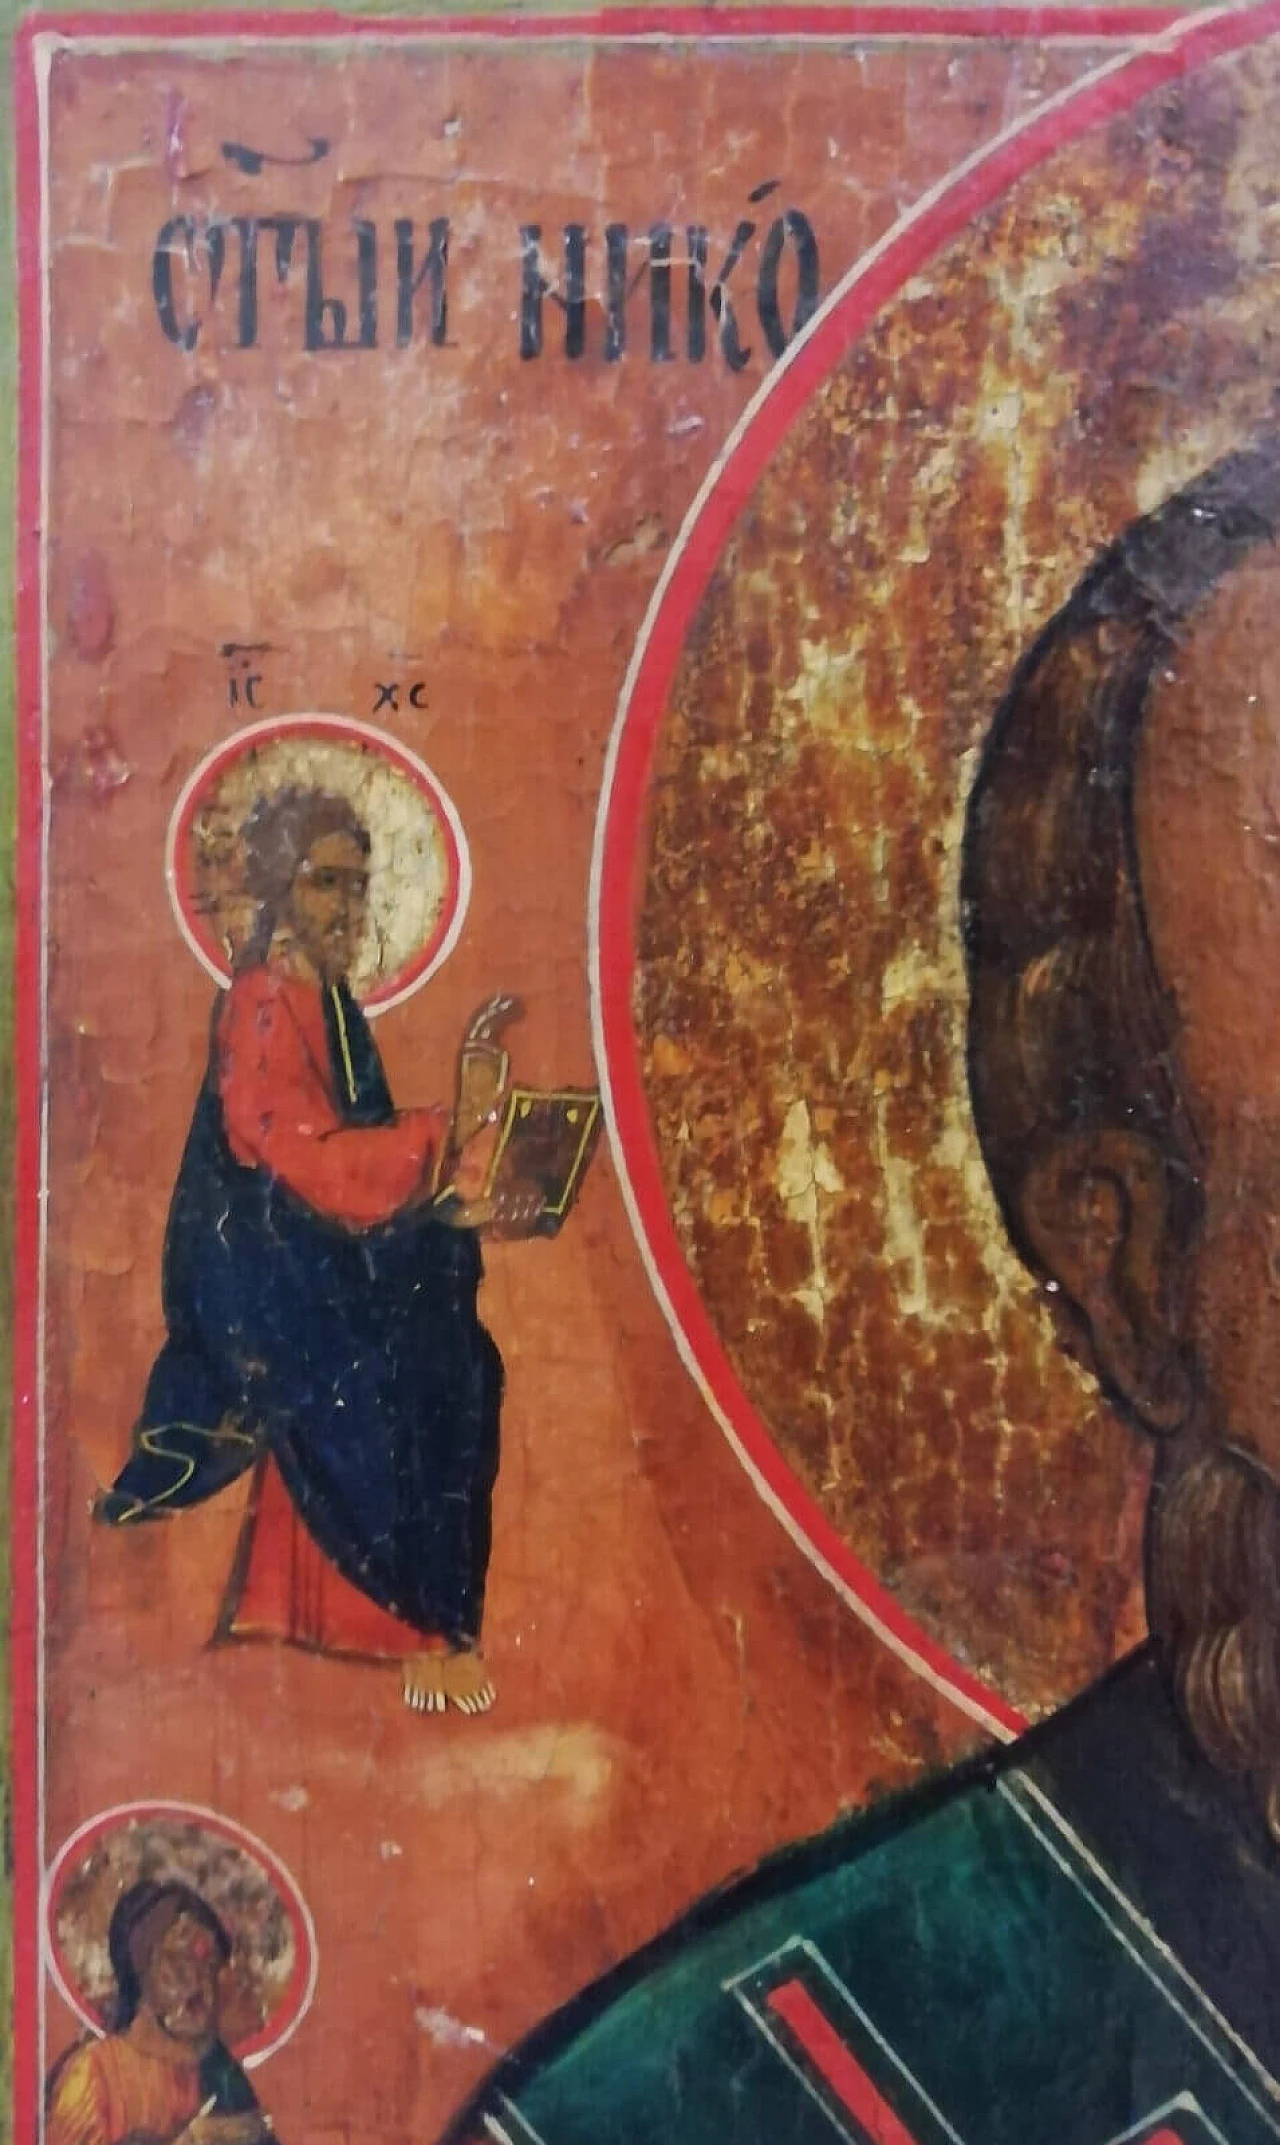 Icona di San Nicola, tempera all'uovo su tavola, '700 5